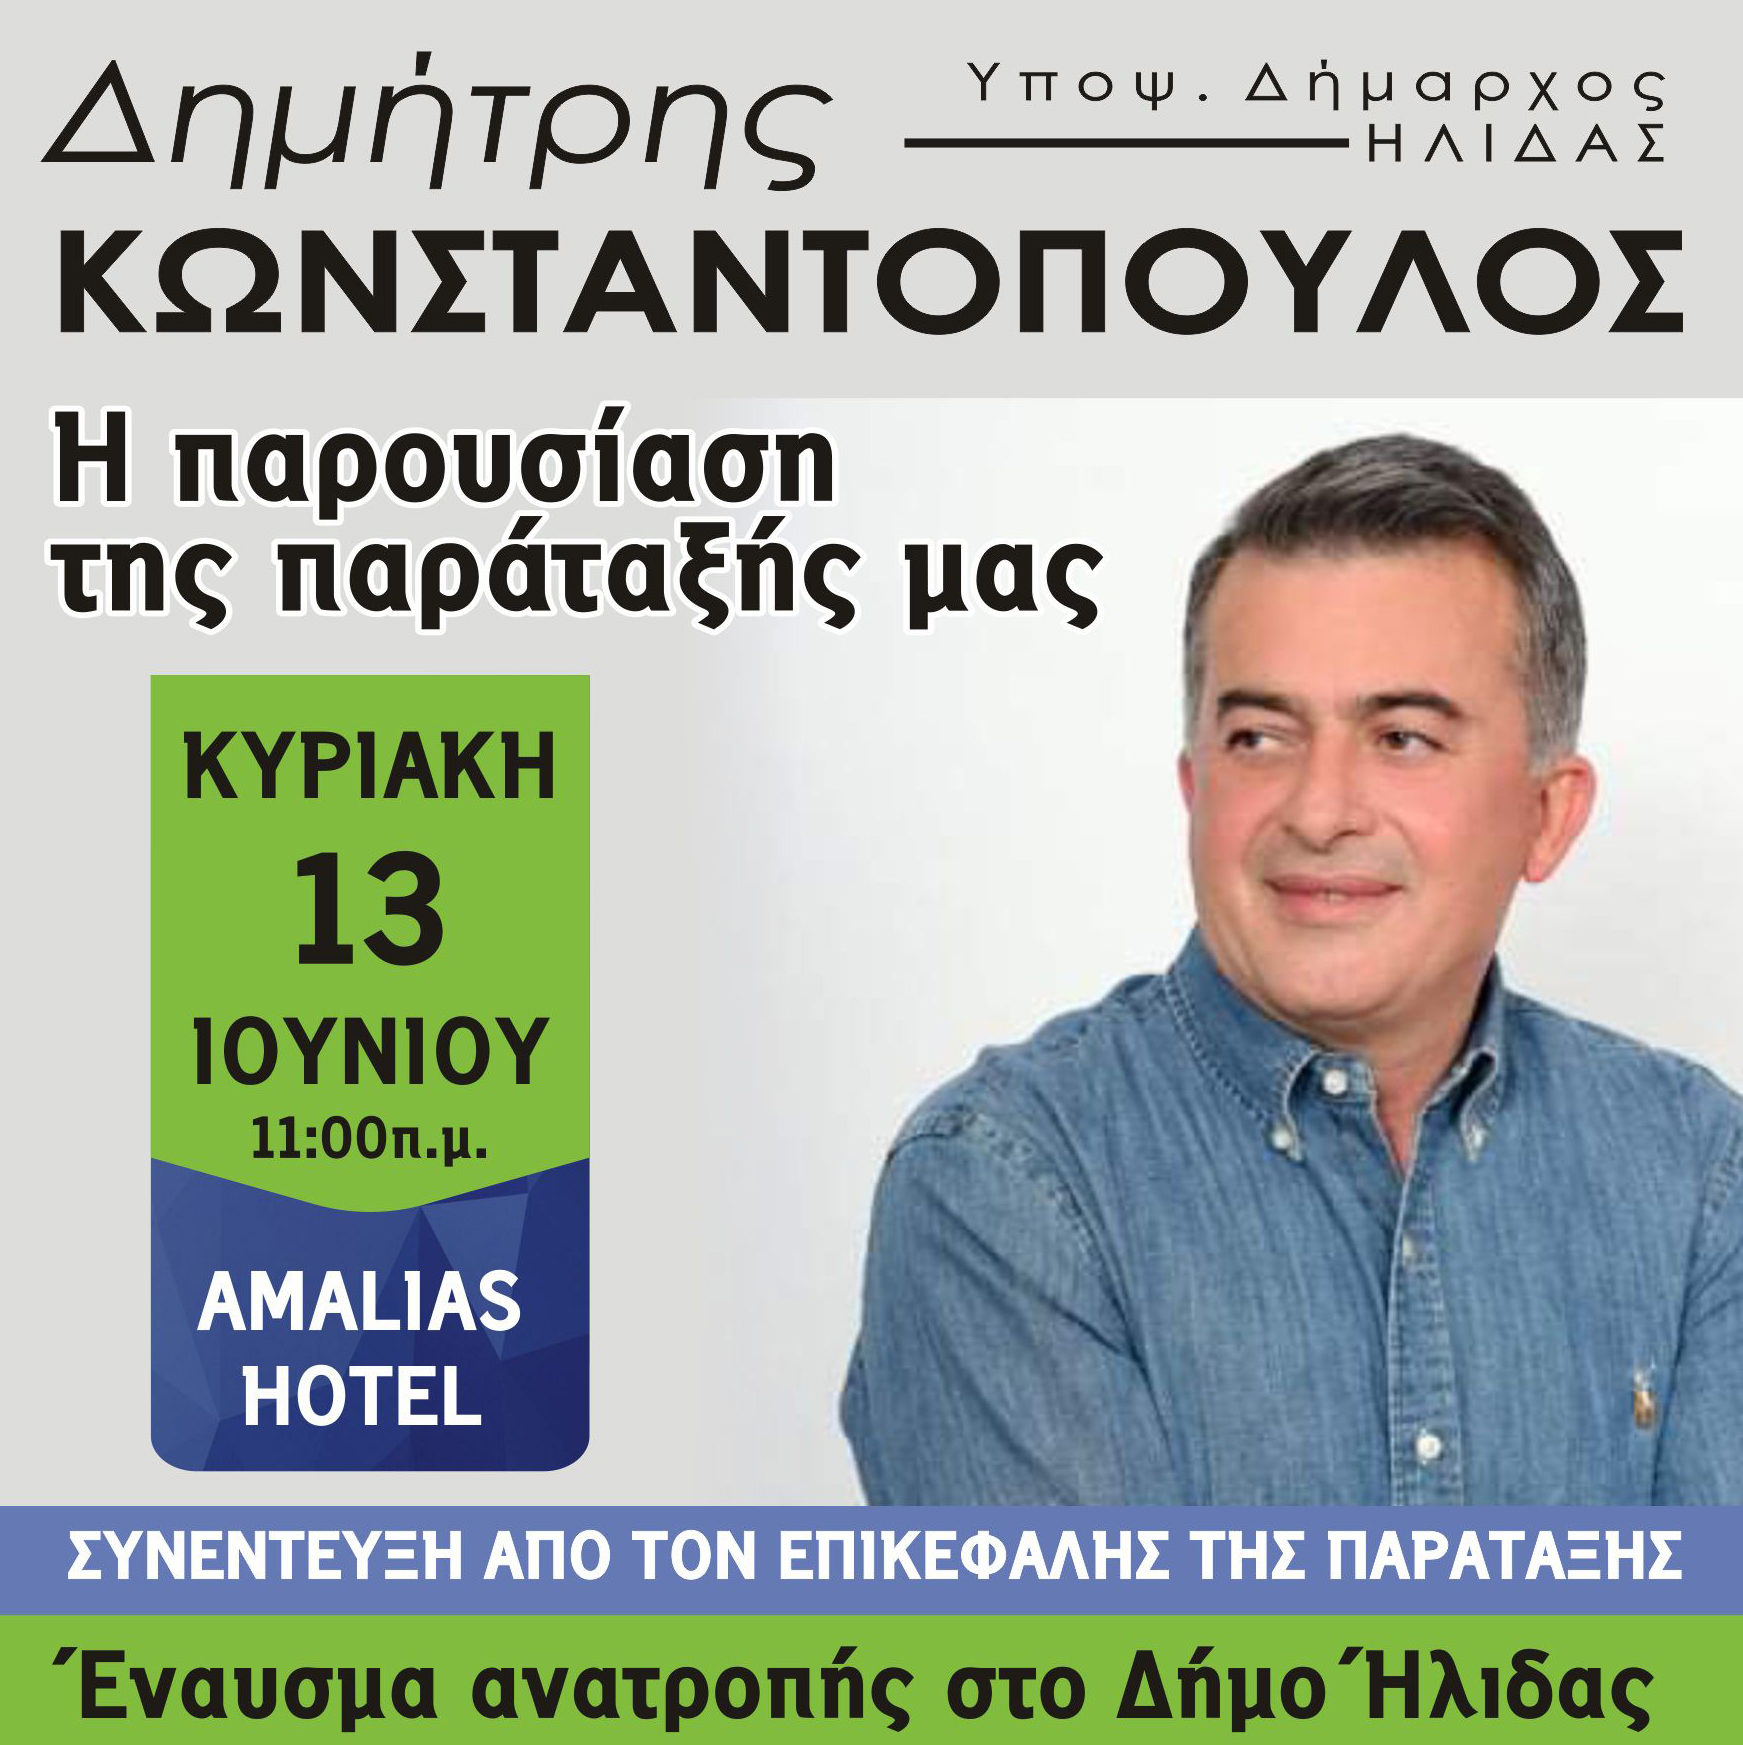 Δημήτρης Κωνσταντόπουλος: Την Κυριακή παρουσιάζει την παράταξή του